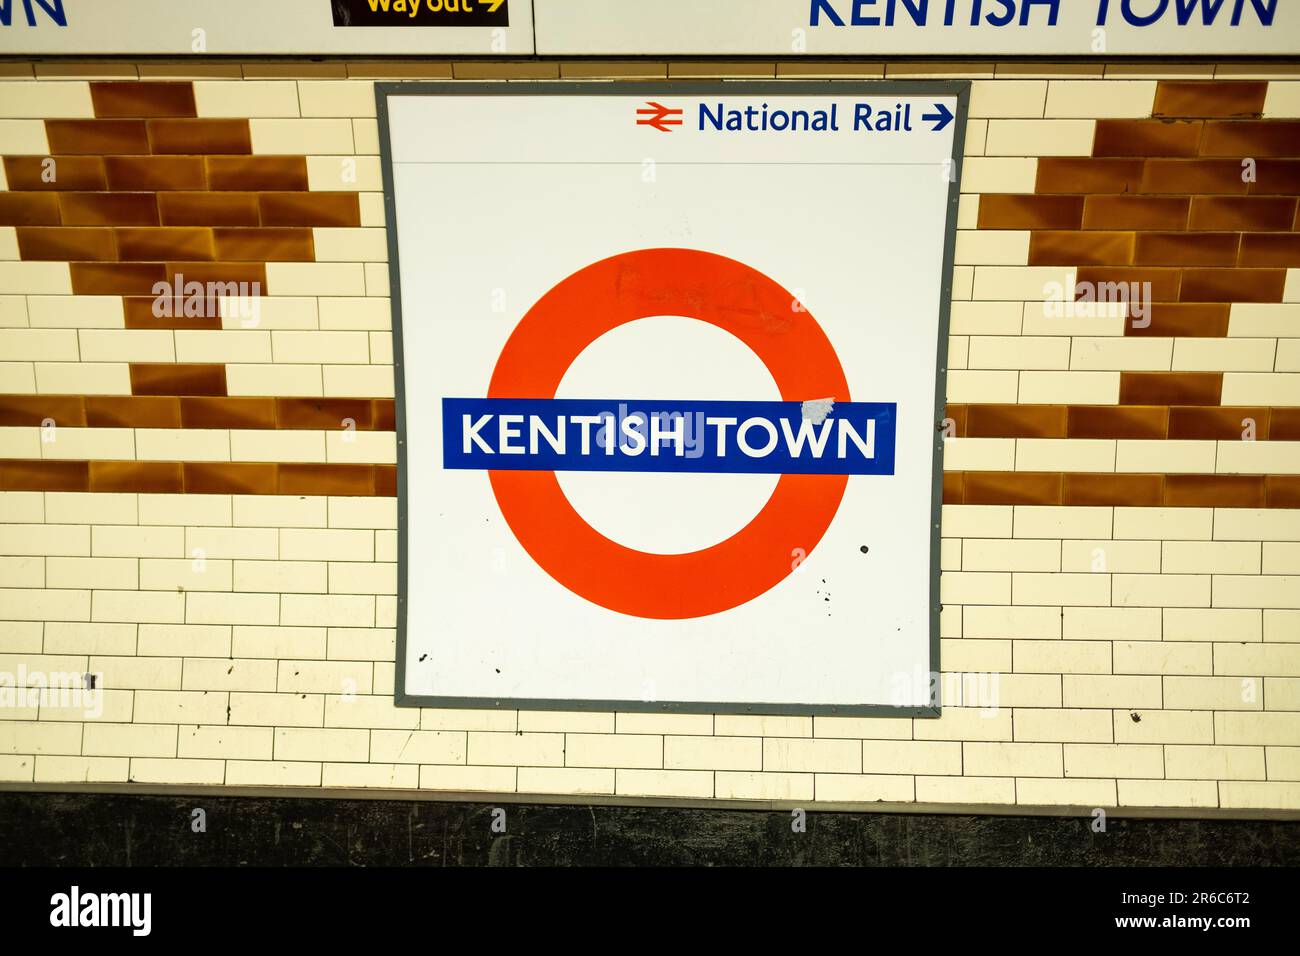 LONDRES - 21 MARS 2023 : station de métro Kentish Town, station Northern Line dans la région de Camden, au nord de Londres Banque D'Images